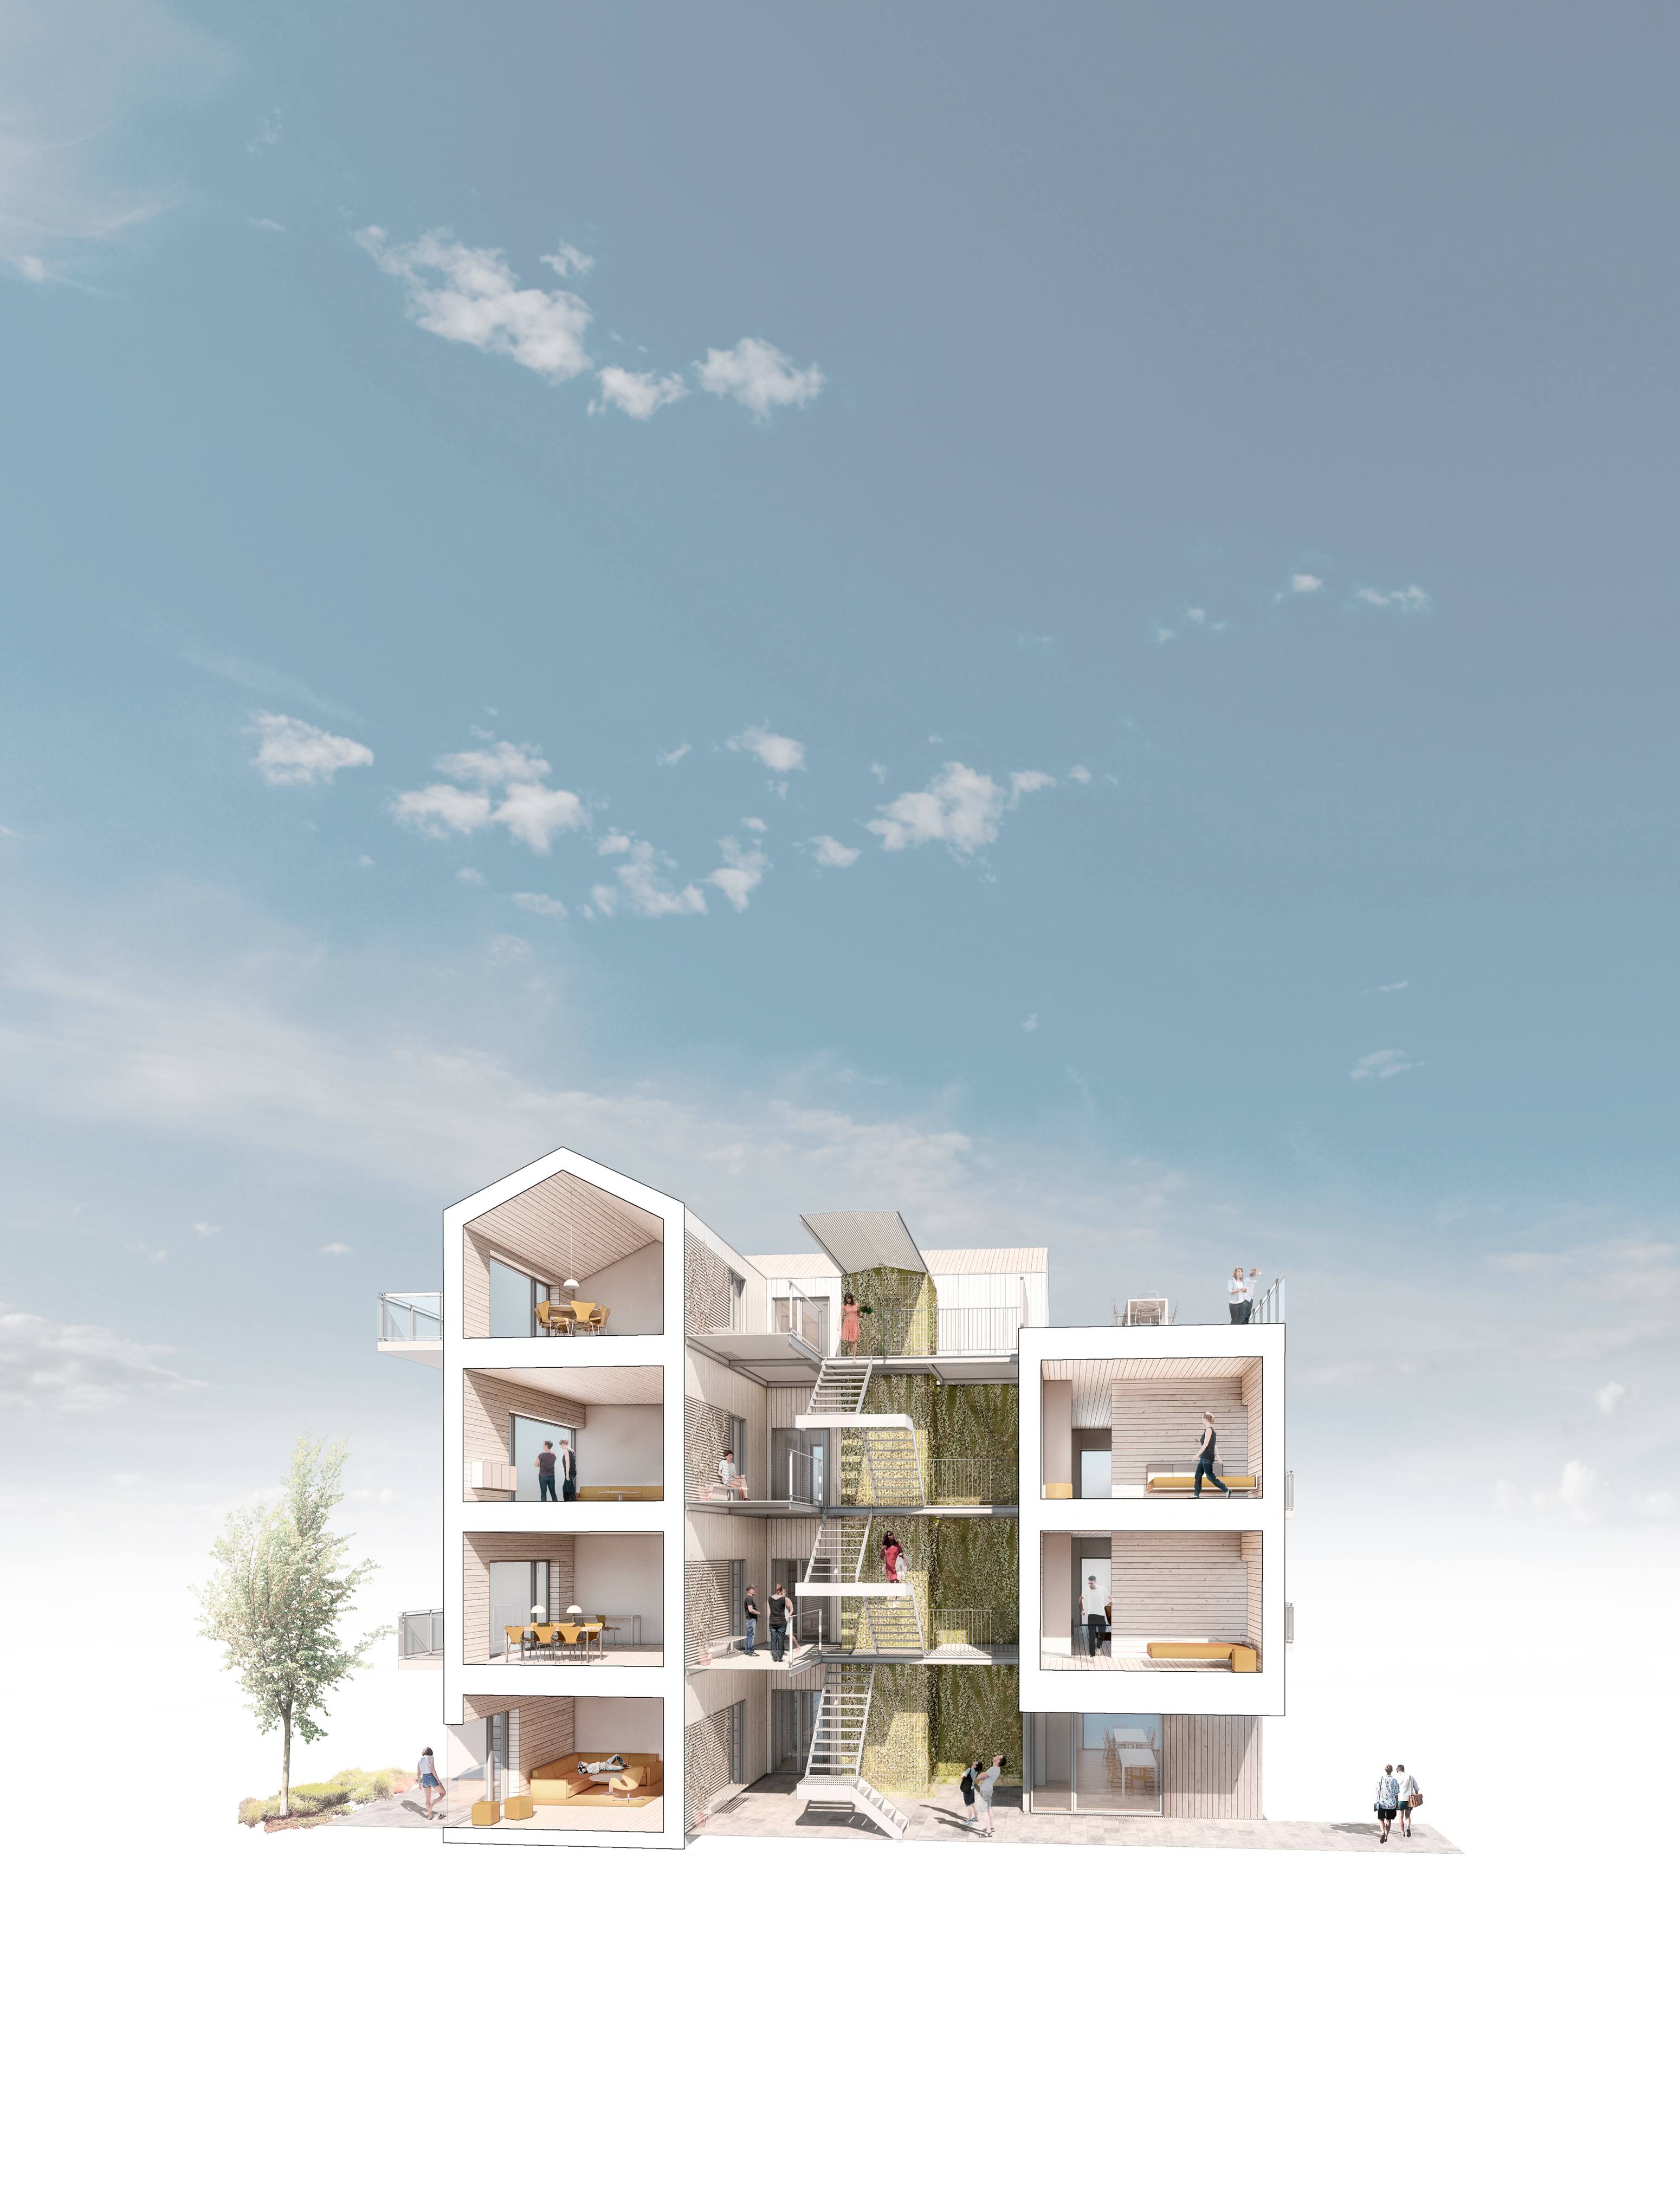 Urban-2-ONV-arkitekter-bofællesskab-præfab-boliger-prefab-housing-_4-himmel